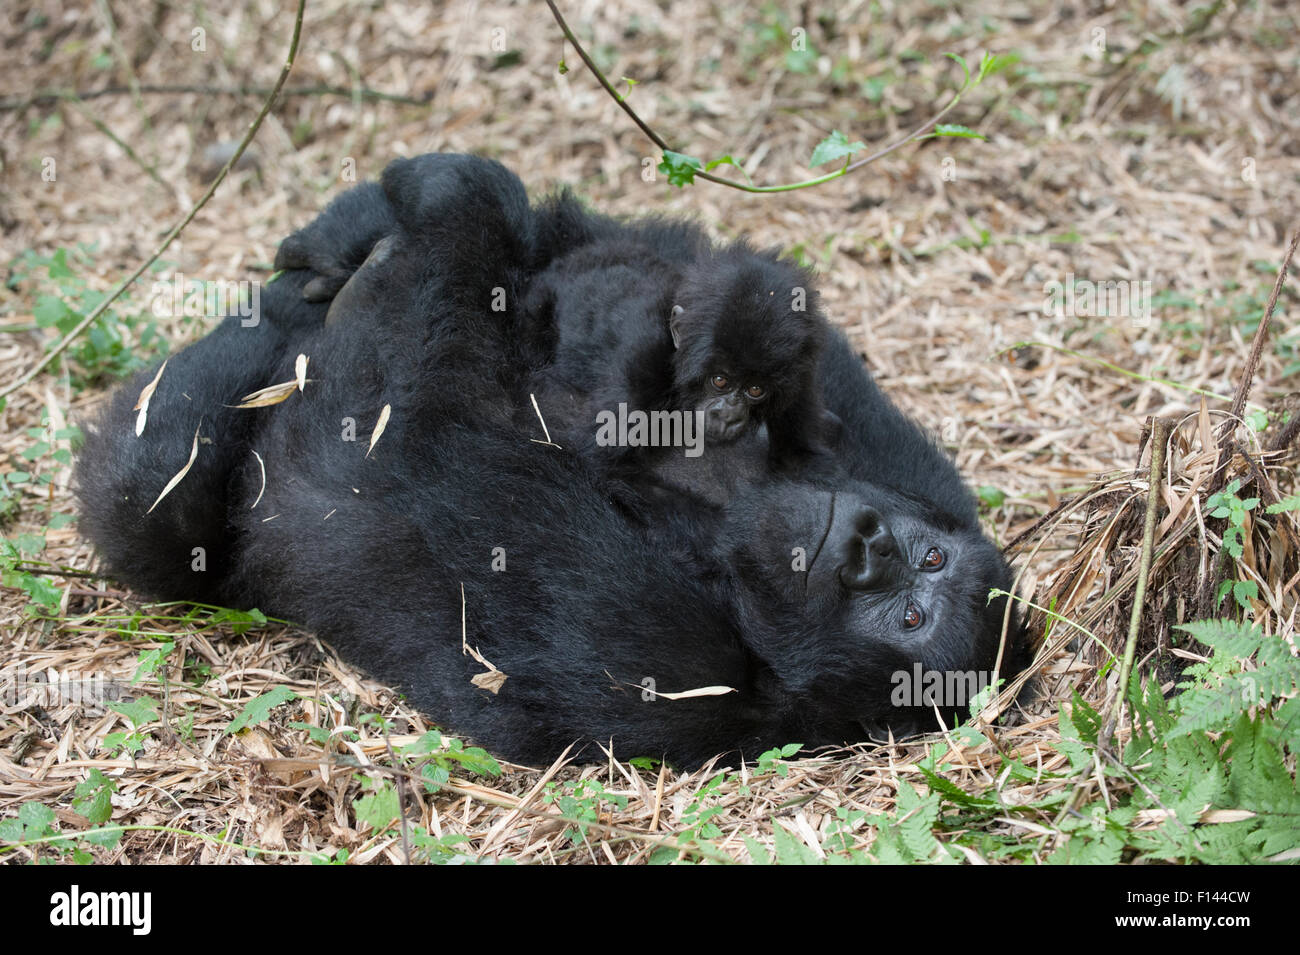 Gorille de montagne (Gorilla gorilla beringei) mère allongé sur le dos et holding baby age d'un an. Parc national des volcans, Rwanda. Les espèces en voie de disparition Banque D'Images